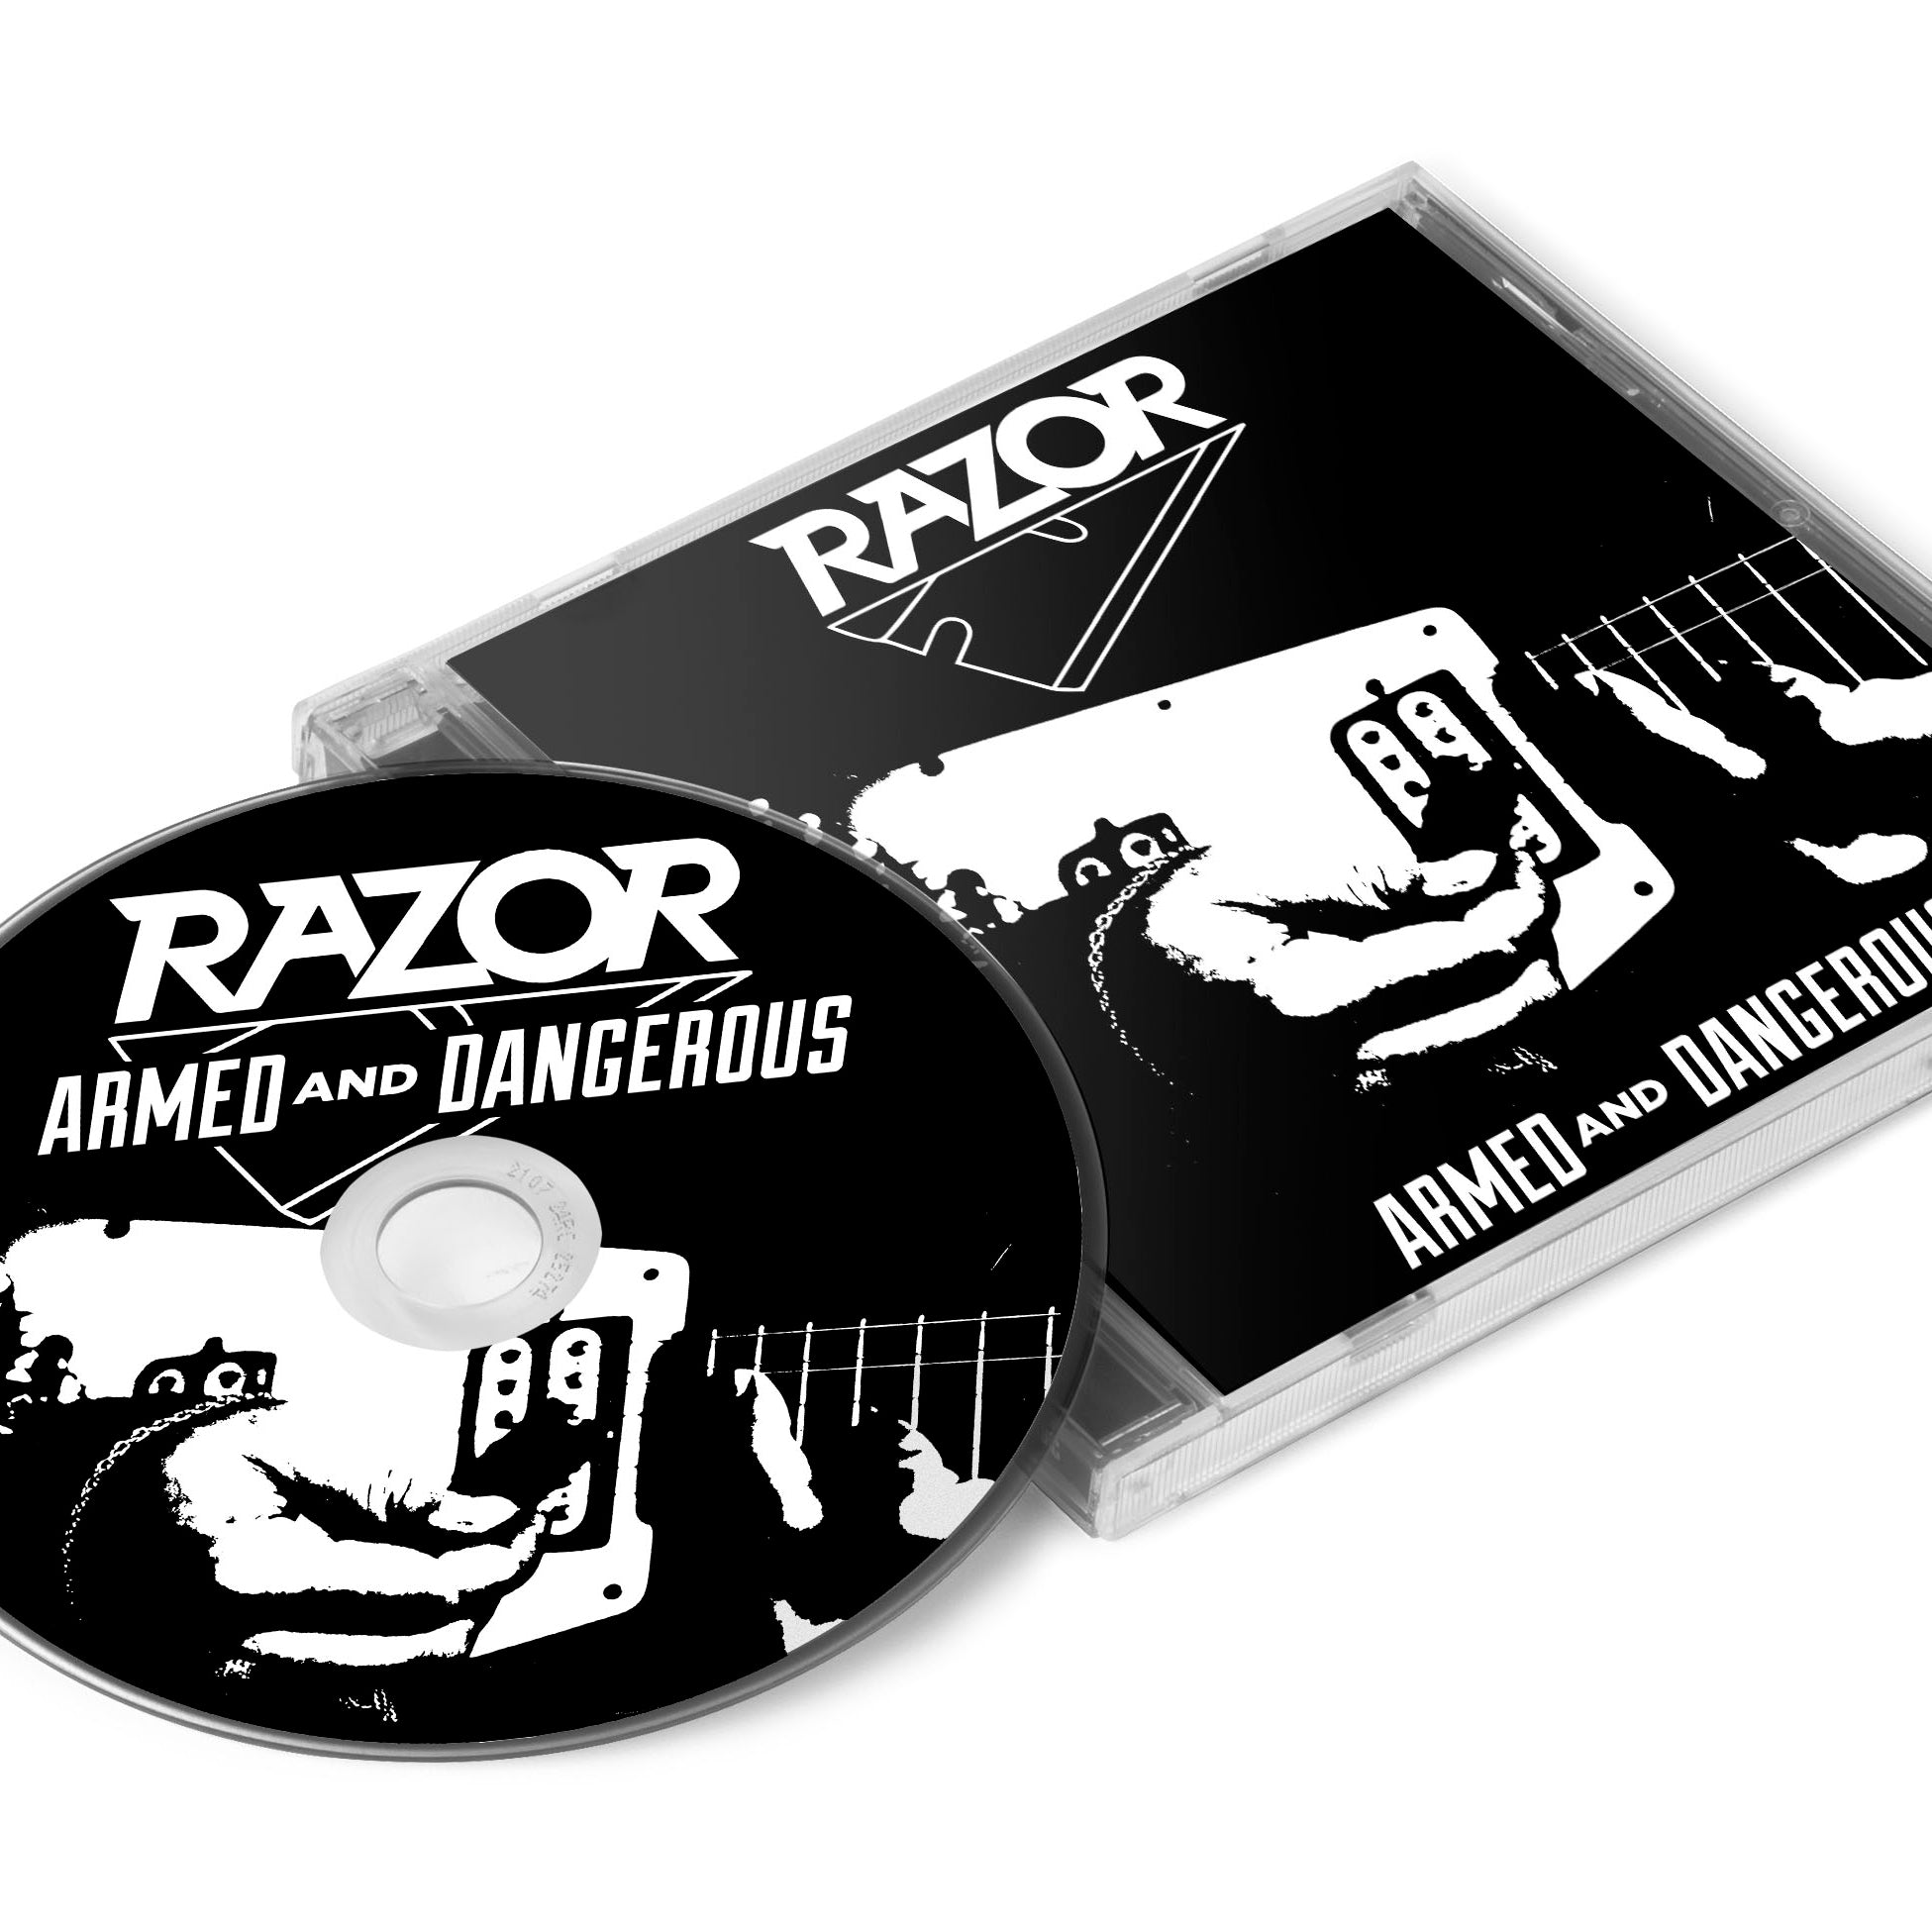 Razor "Armed and Dangerous (Reissue)" CD